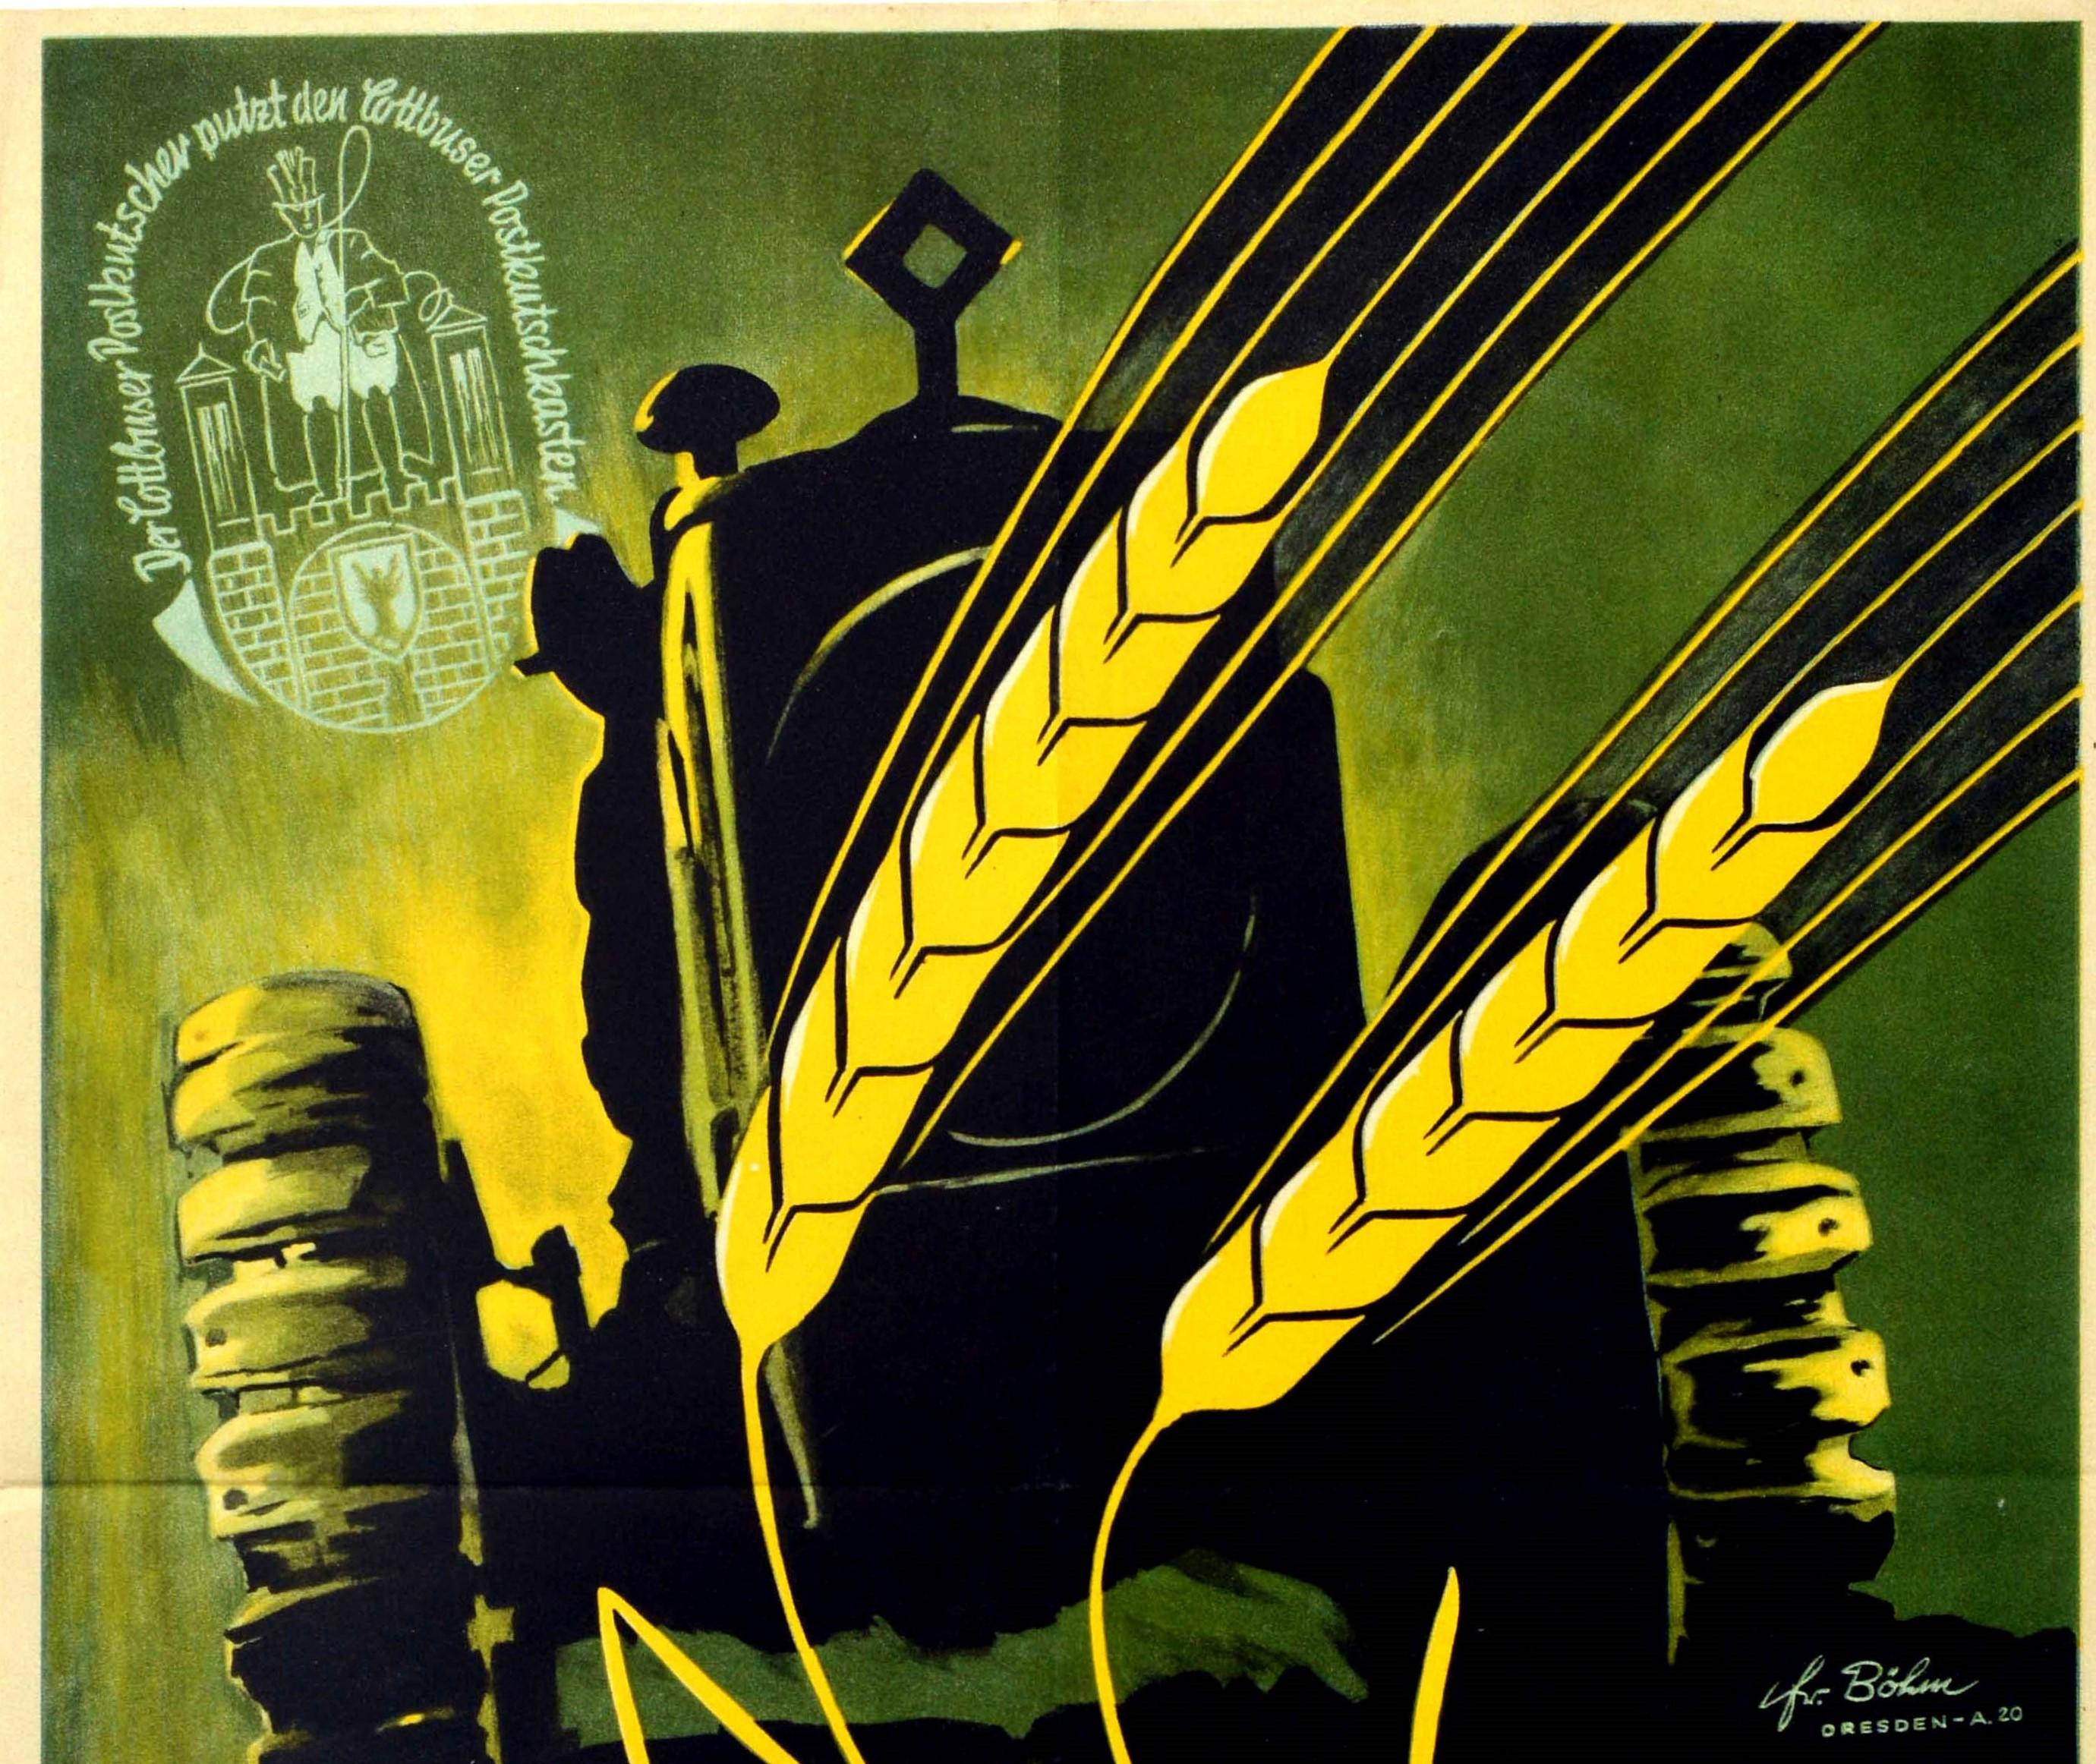 Affiche publicitaire originale d'époque pour la Cottbuser Landwirtschafts Woche 1949 vom 4-11 September / Semaine de l'agriculture de Cottbus présentant une superbe illustration d'un épi de blé jaune à l'avant d'un tracteur agricole vert foncé et